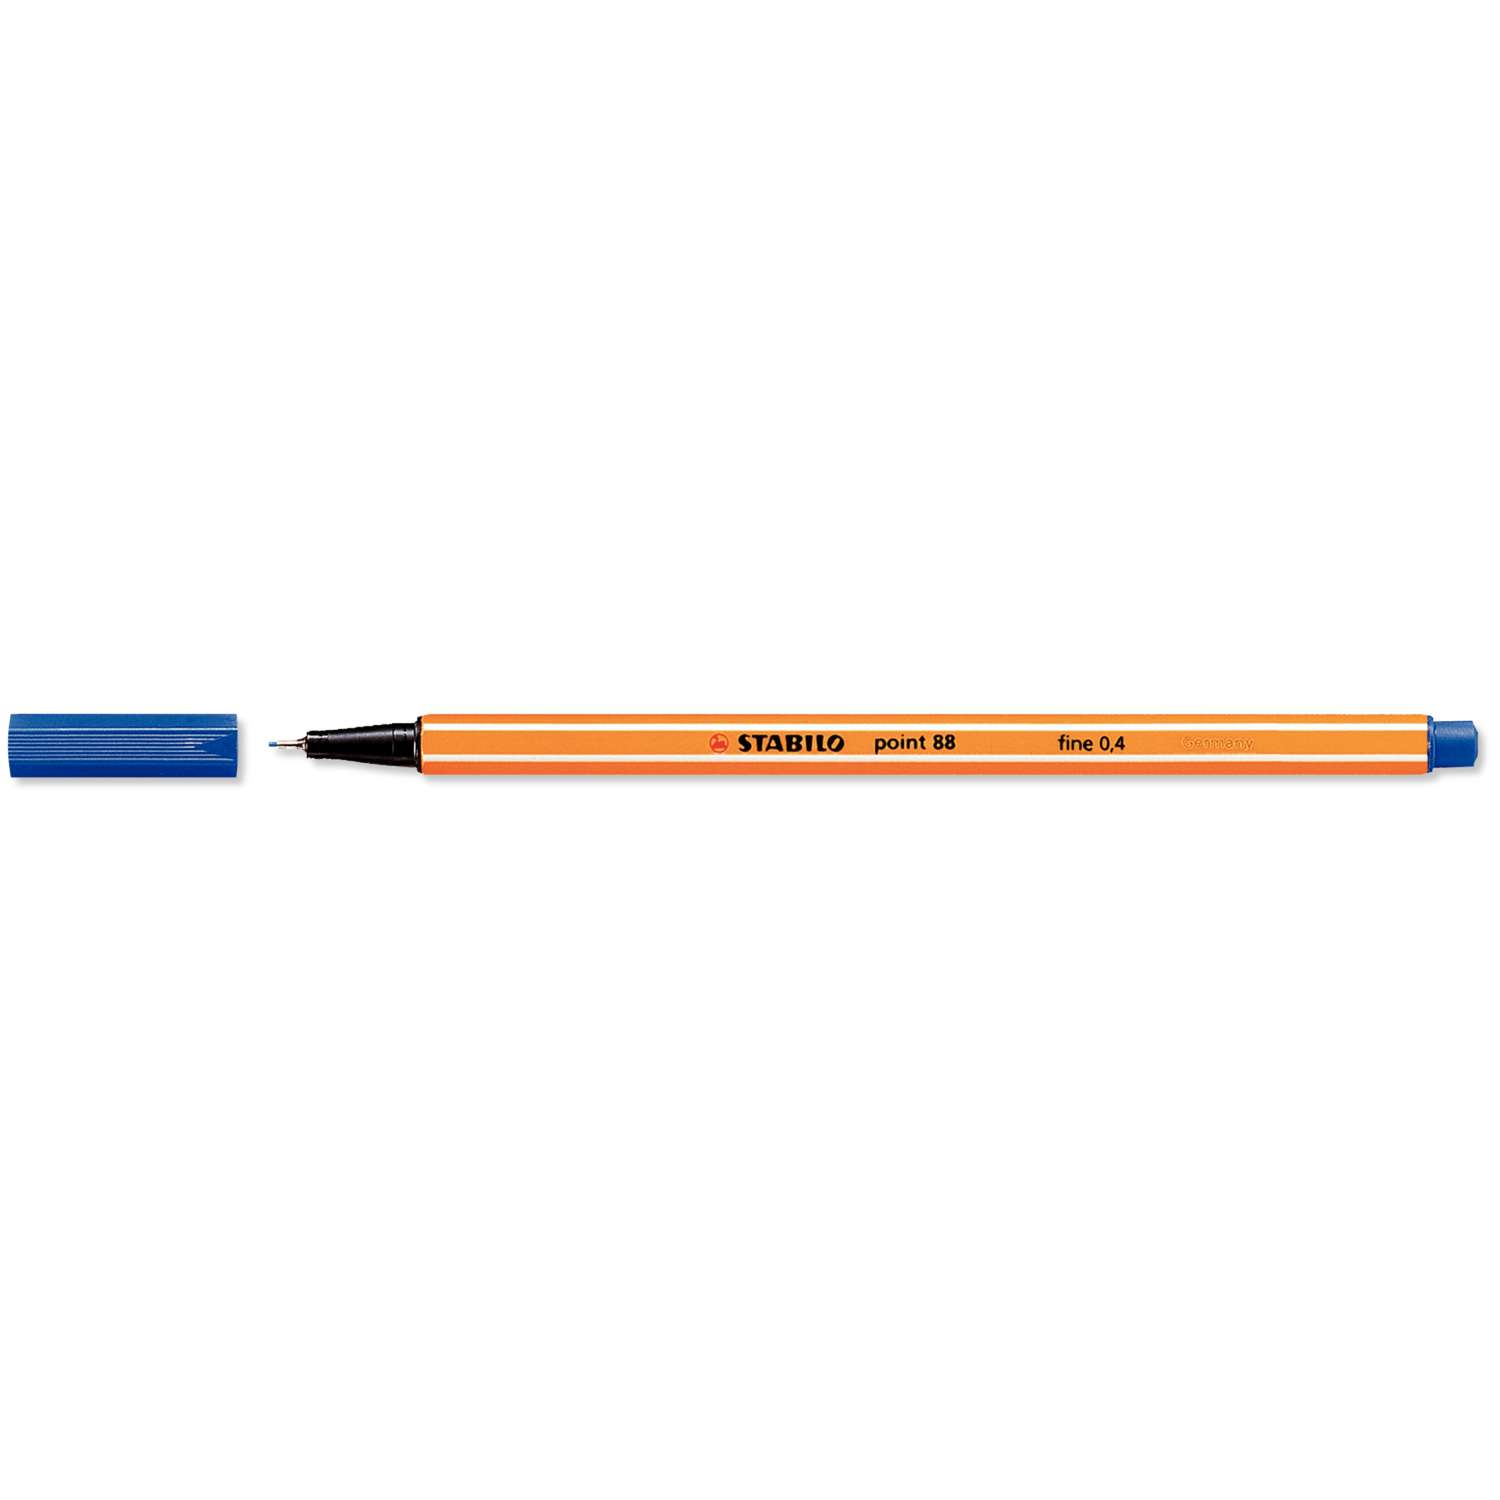 STABILO penna pennarello stabilo point 88 punta fine fineliner 0,4 per disegno contorni 